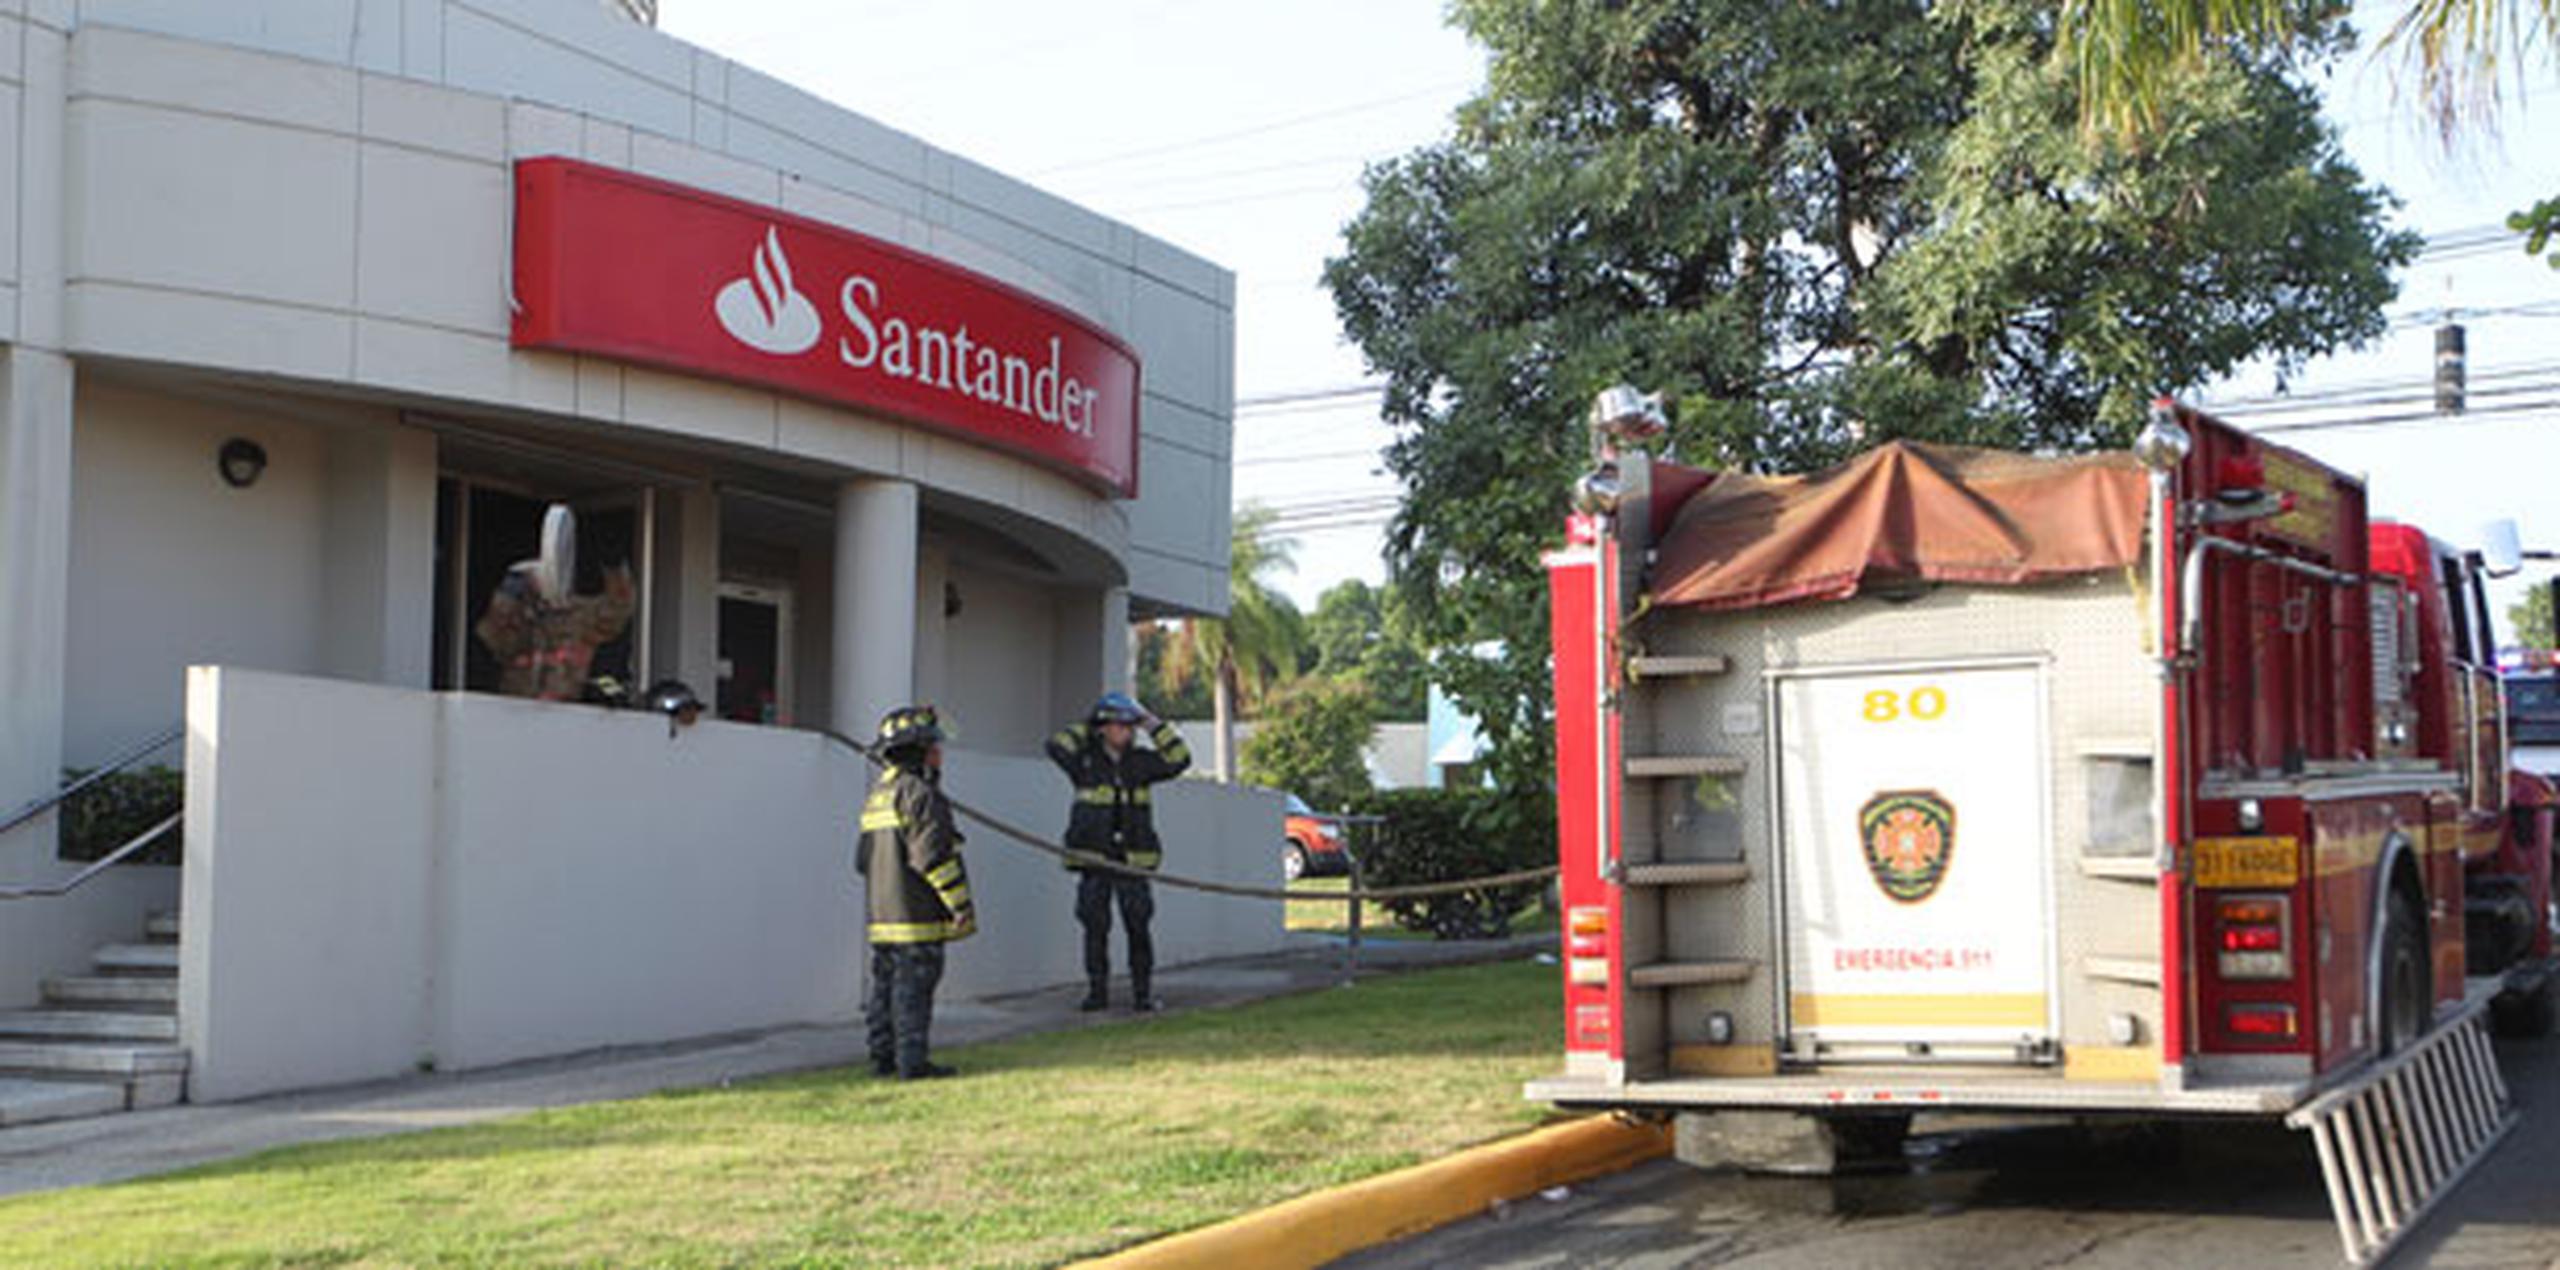 Torres aclaró que el fuego solo afectó la puerta, no el resto del banco. (alex.figueroa@gfrmedia.com)